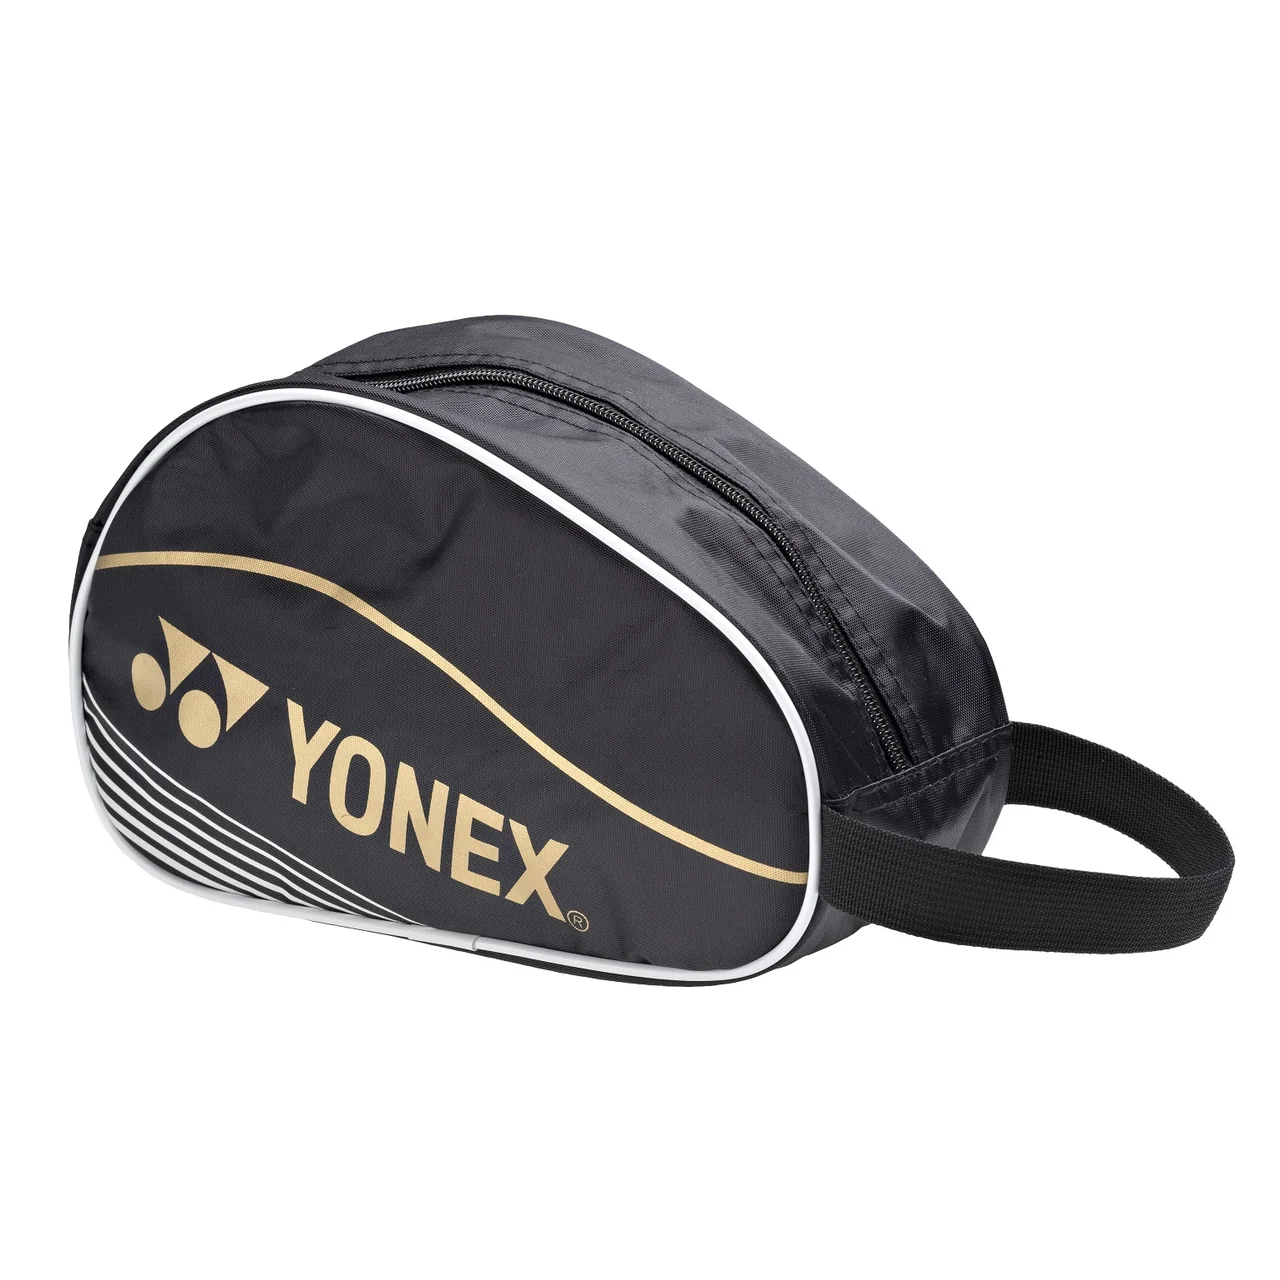 Yonex Toilet Bag Black